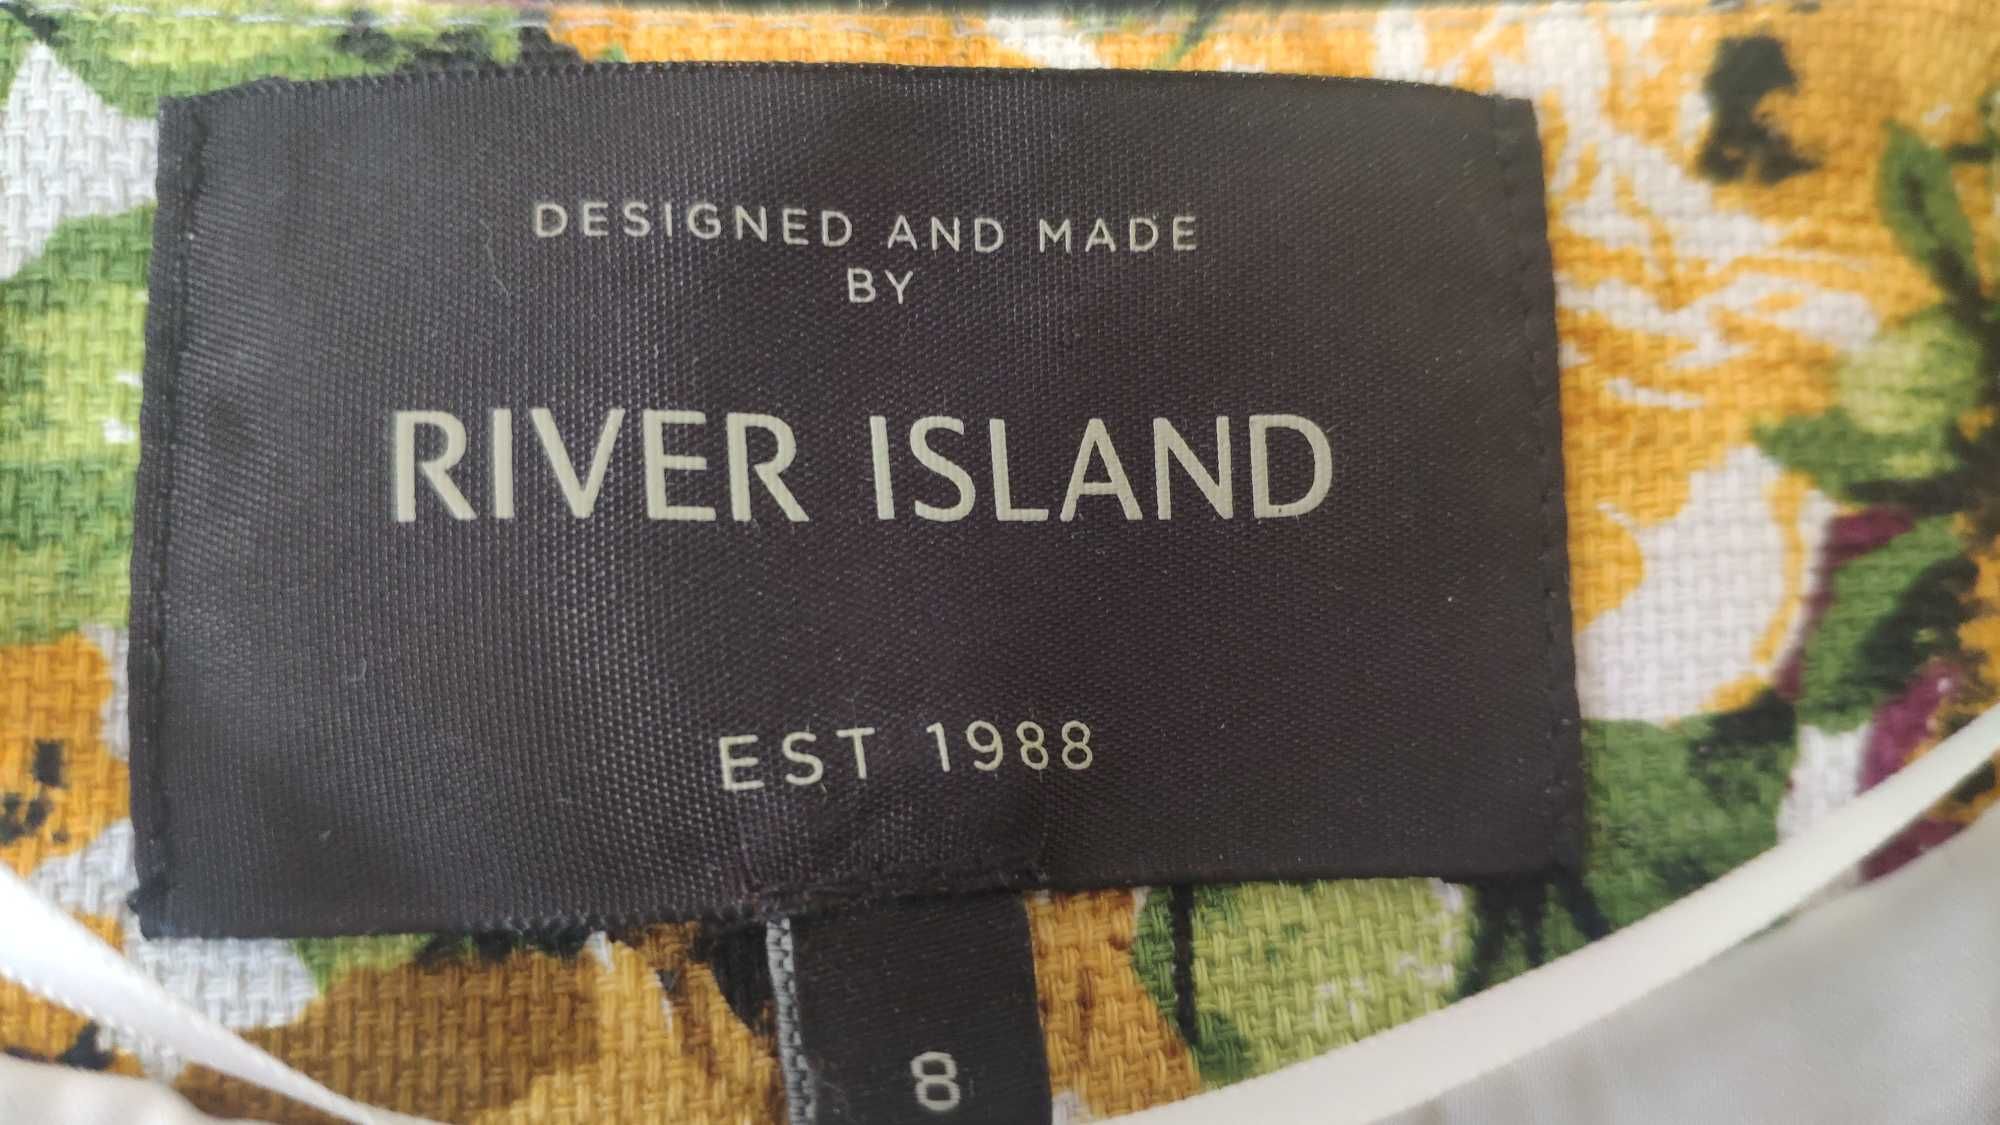 marynarka kurtka river island 97% bawełna rozmiar 34 S jak nowa